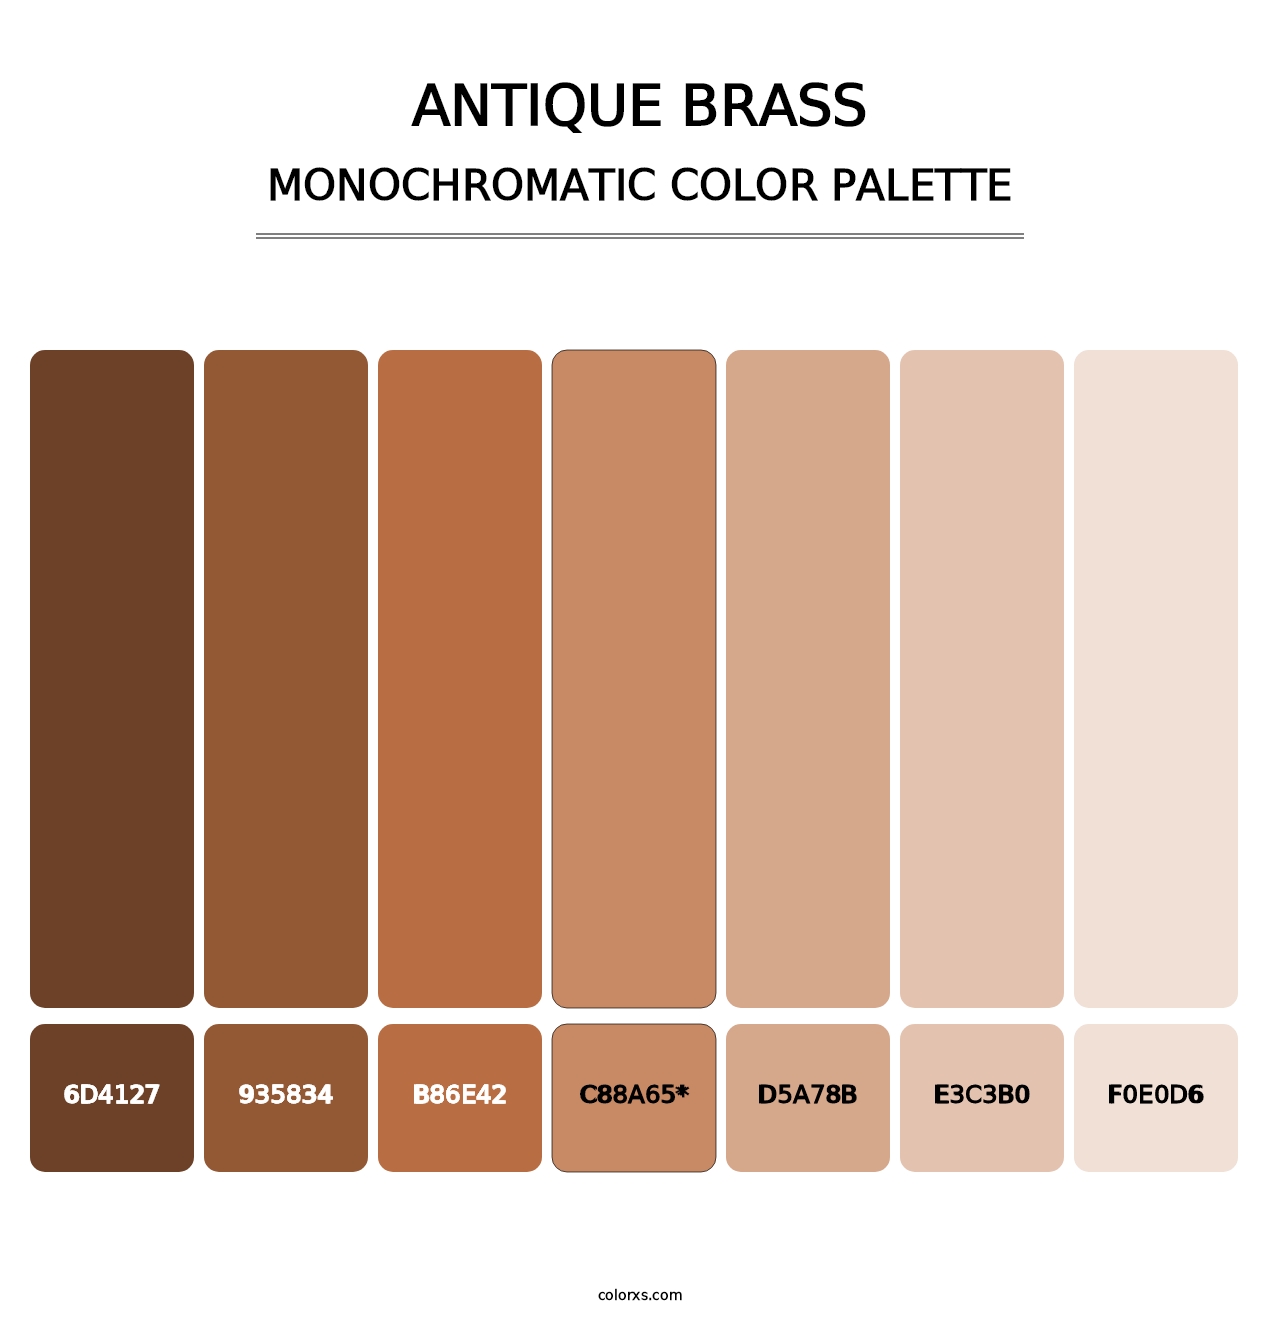 Antique Brass - Monochromatic Color Palette